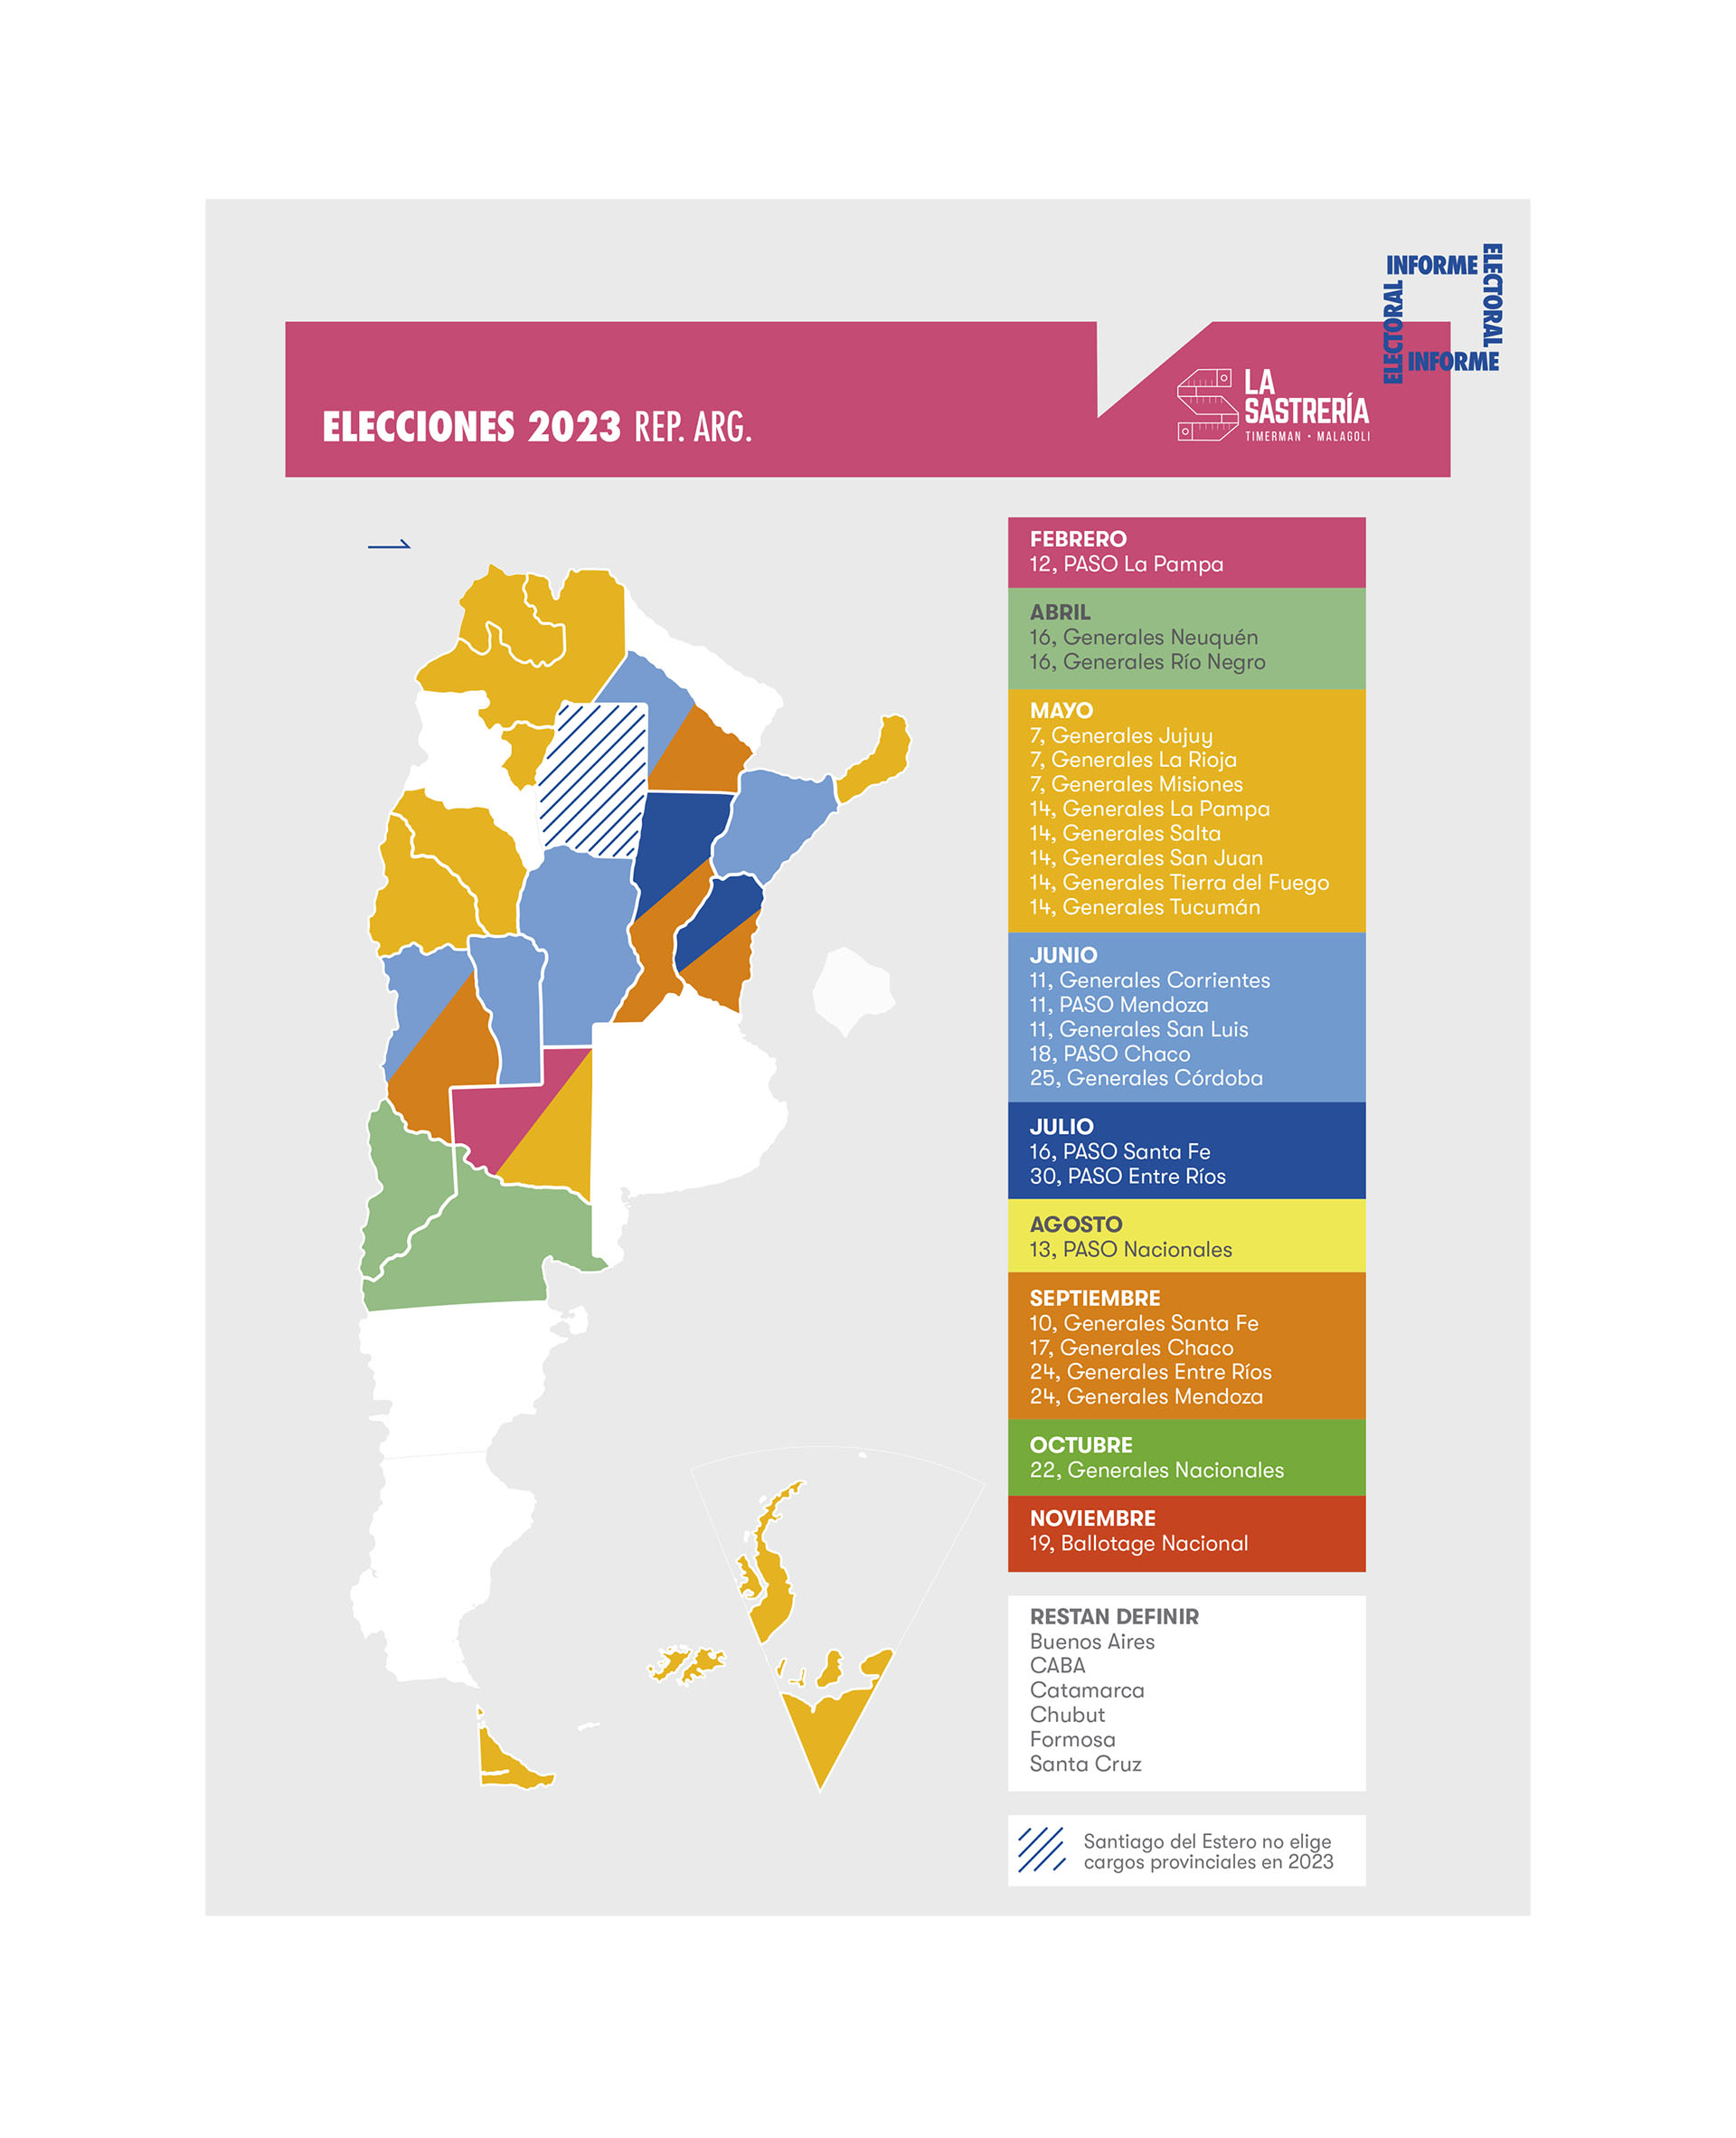 El calendario electoral en las PASO y Generales para este 2023